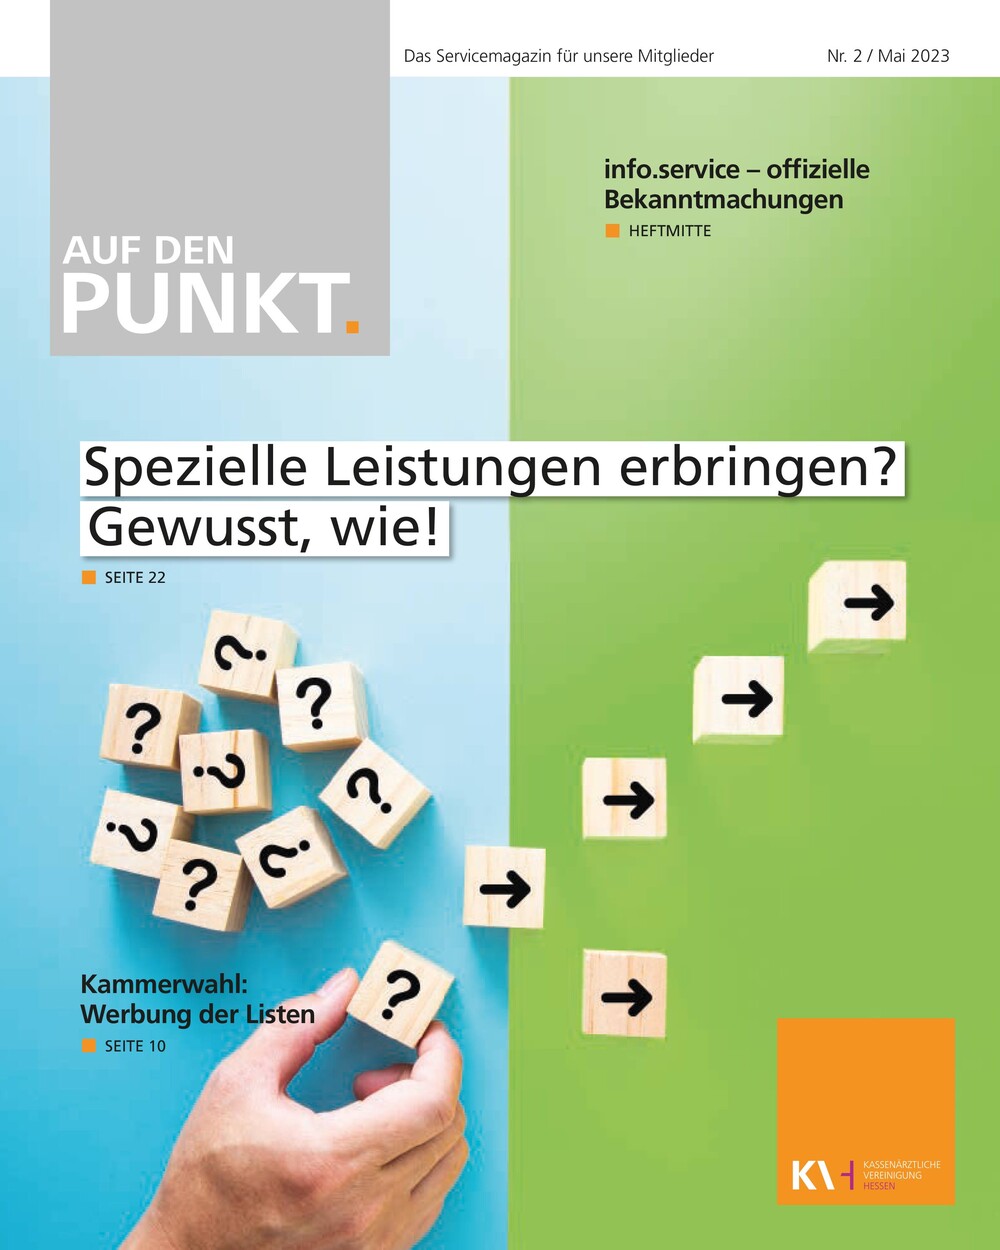 Titelseite der neuesten Auf den PUNKT.“-Ausgabe.